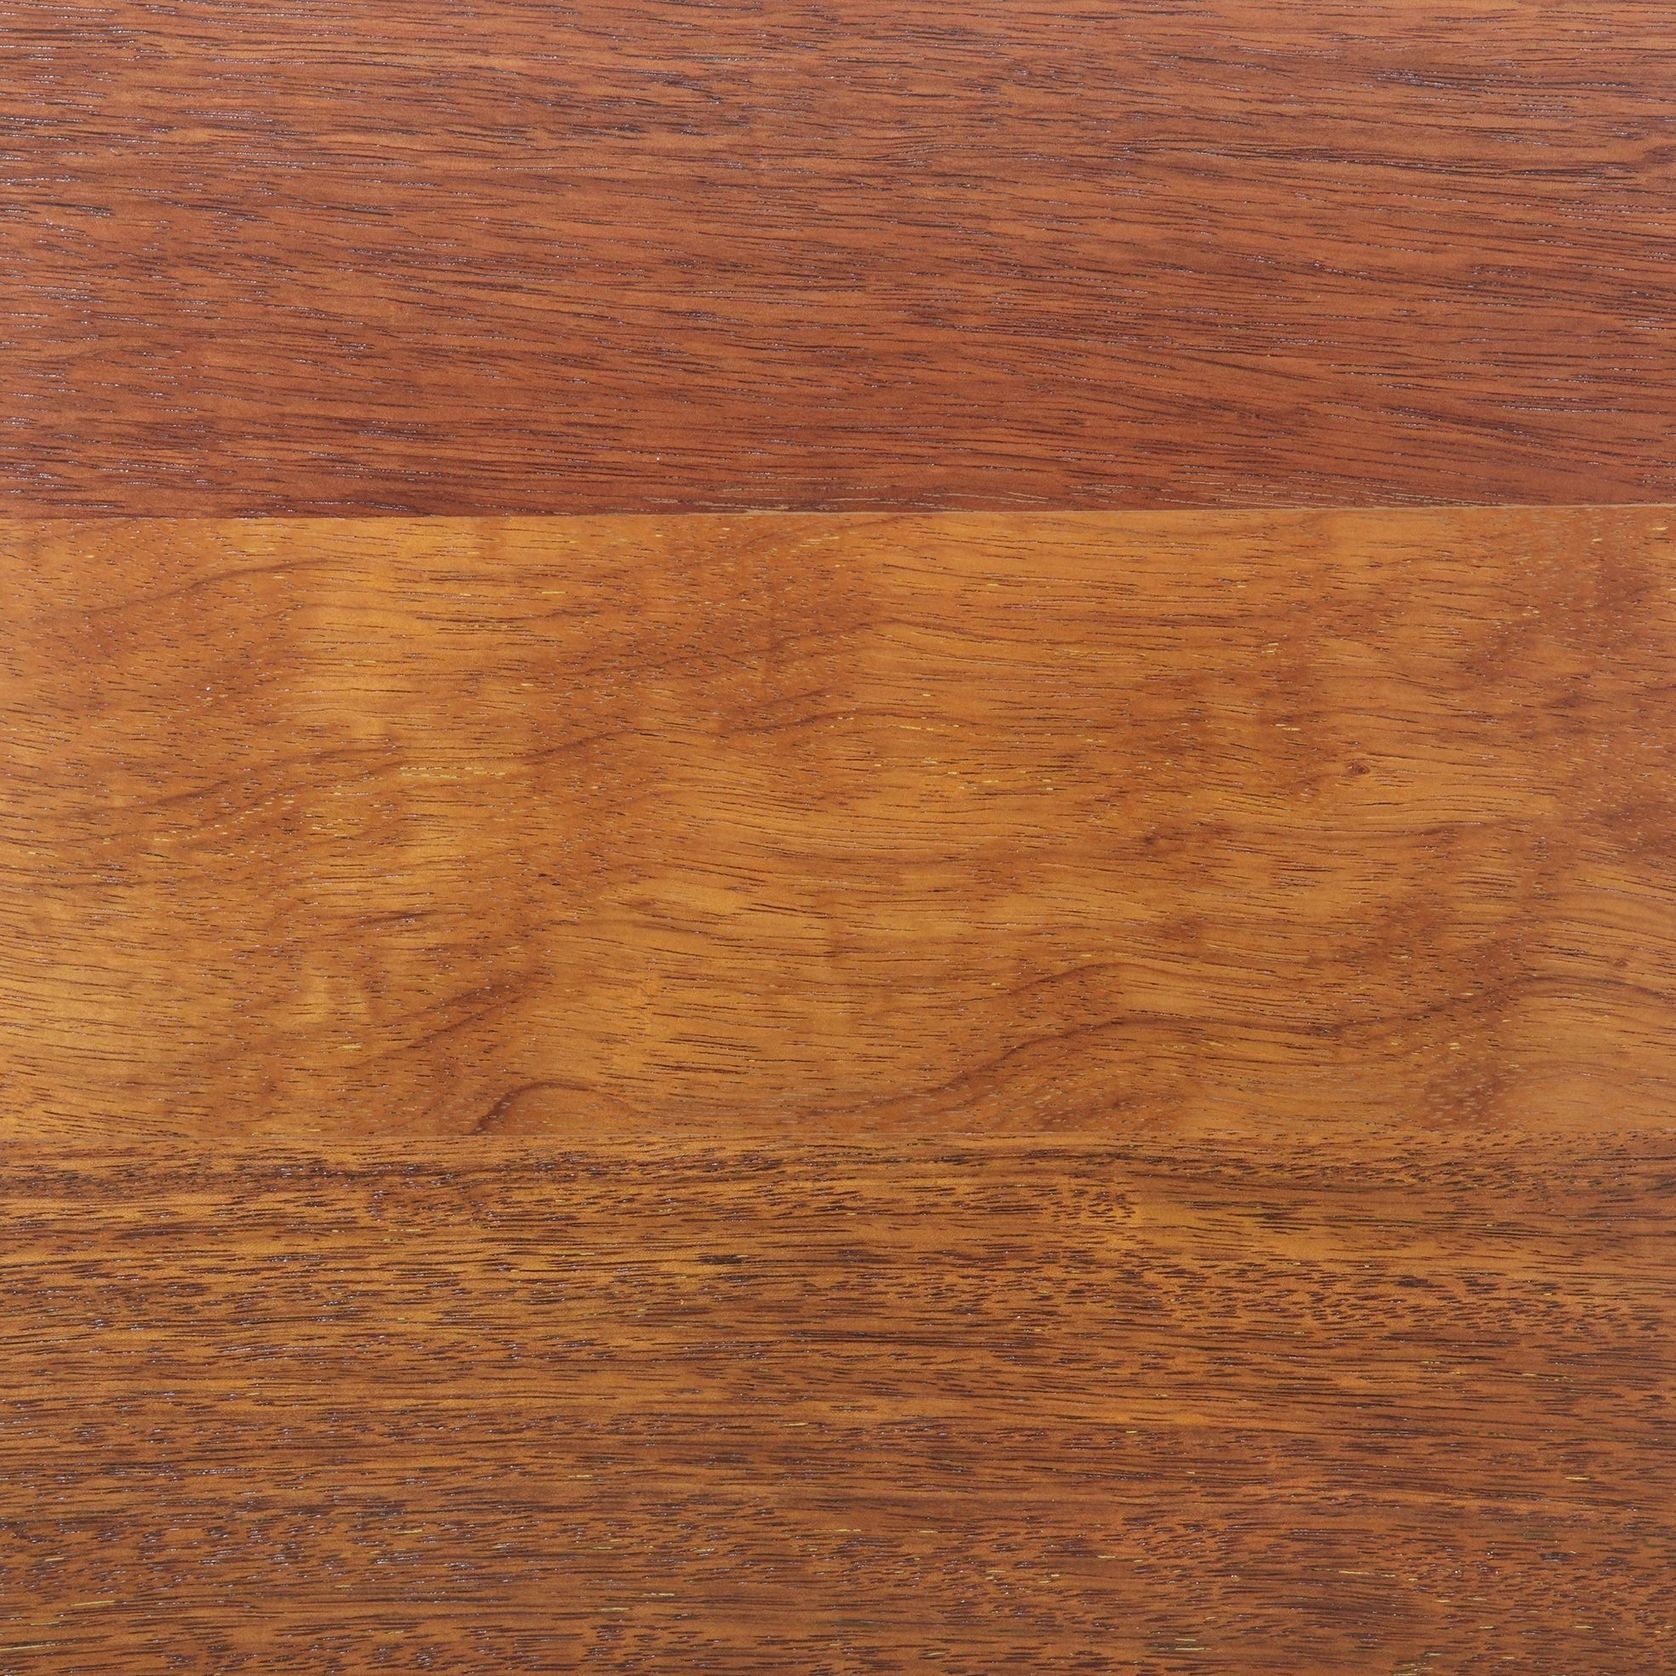 Kwila Wood Flooring, Water Based Polyurethane Finish gallery detail image